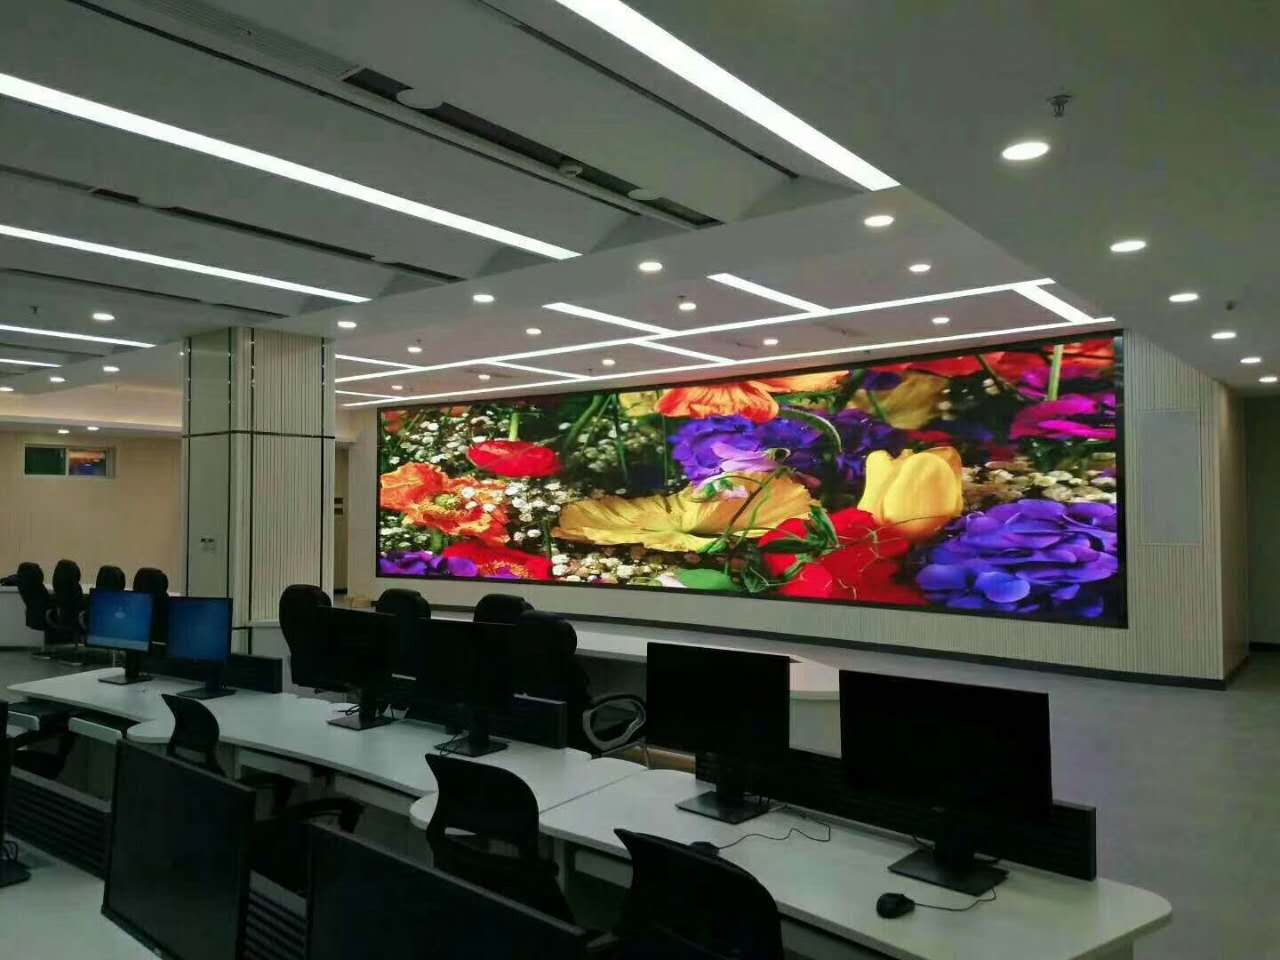 深圳市宝安区政府监控室室内P1.667高清小间距显示屏安装完毕